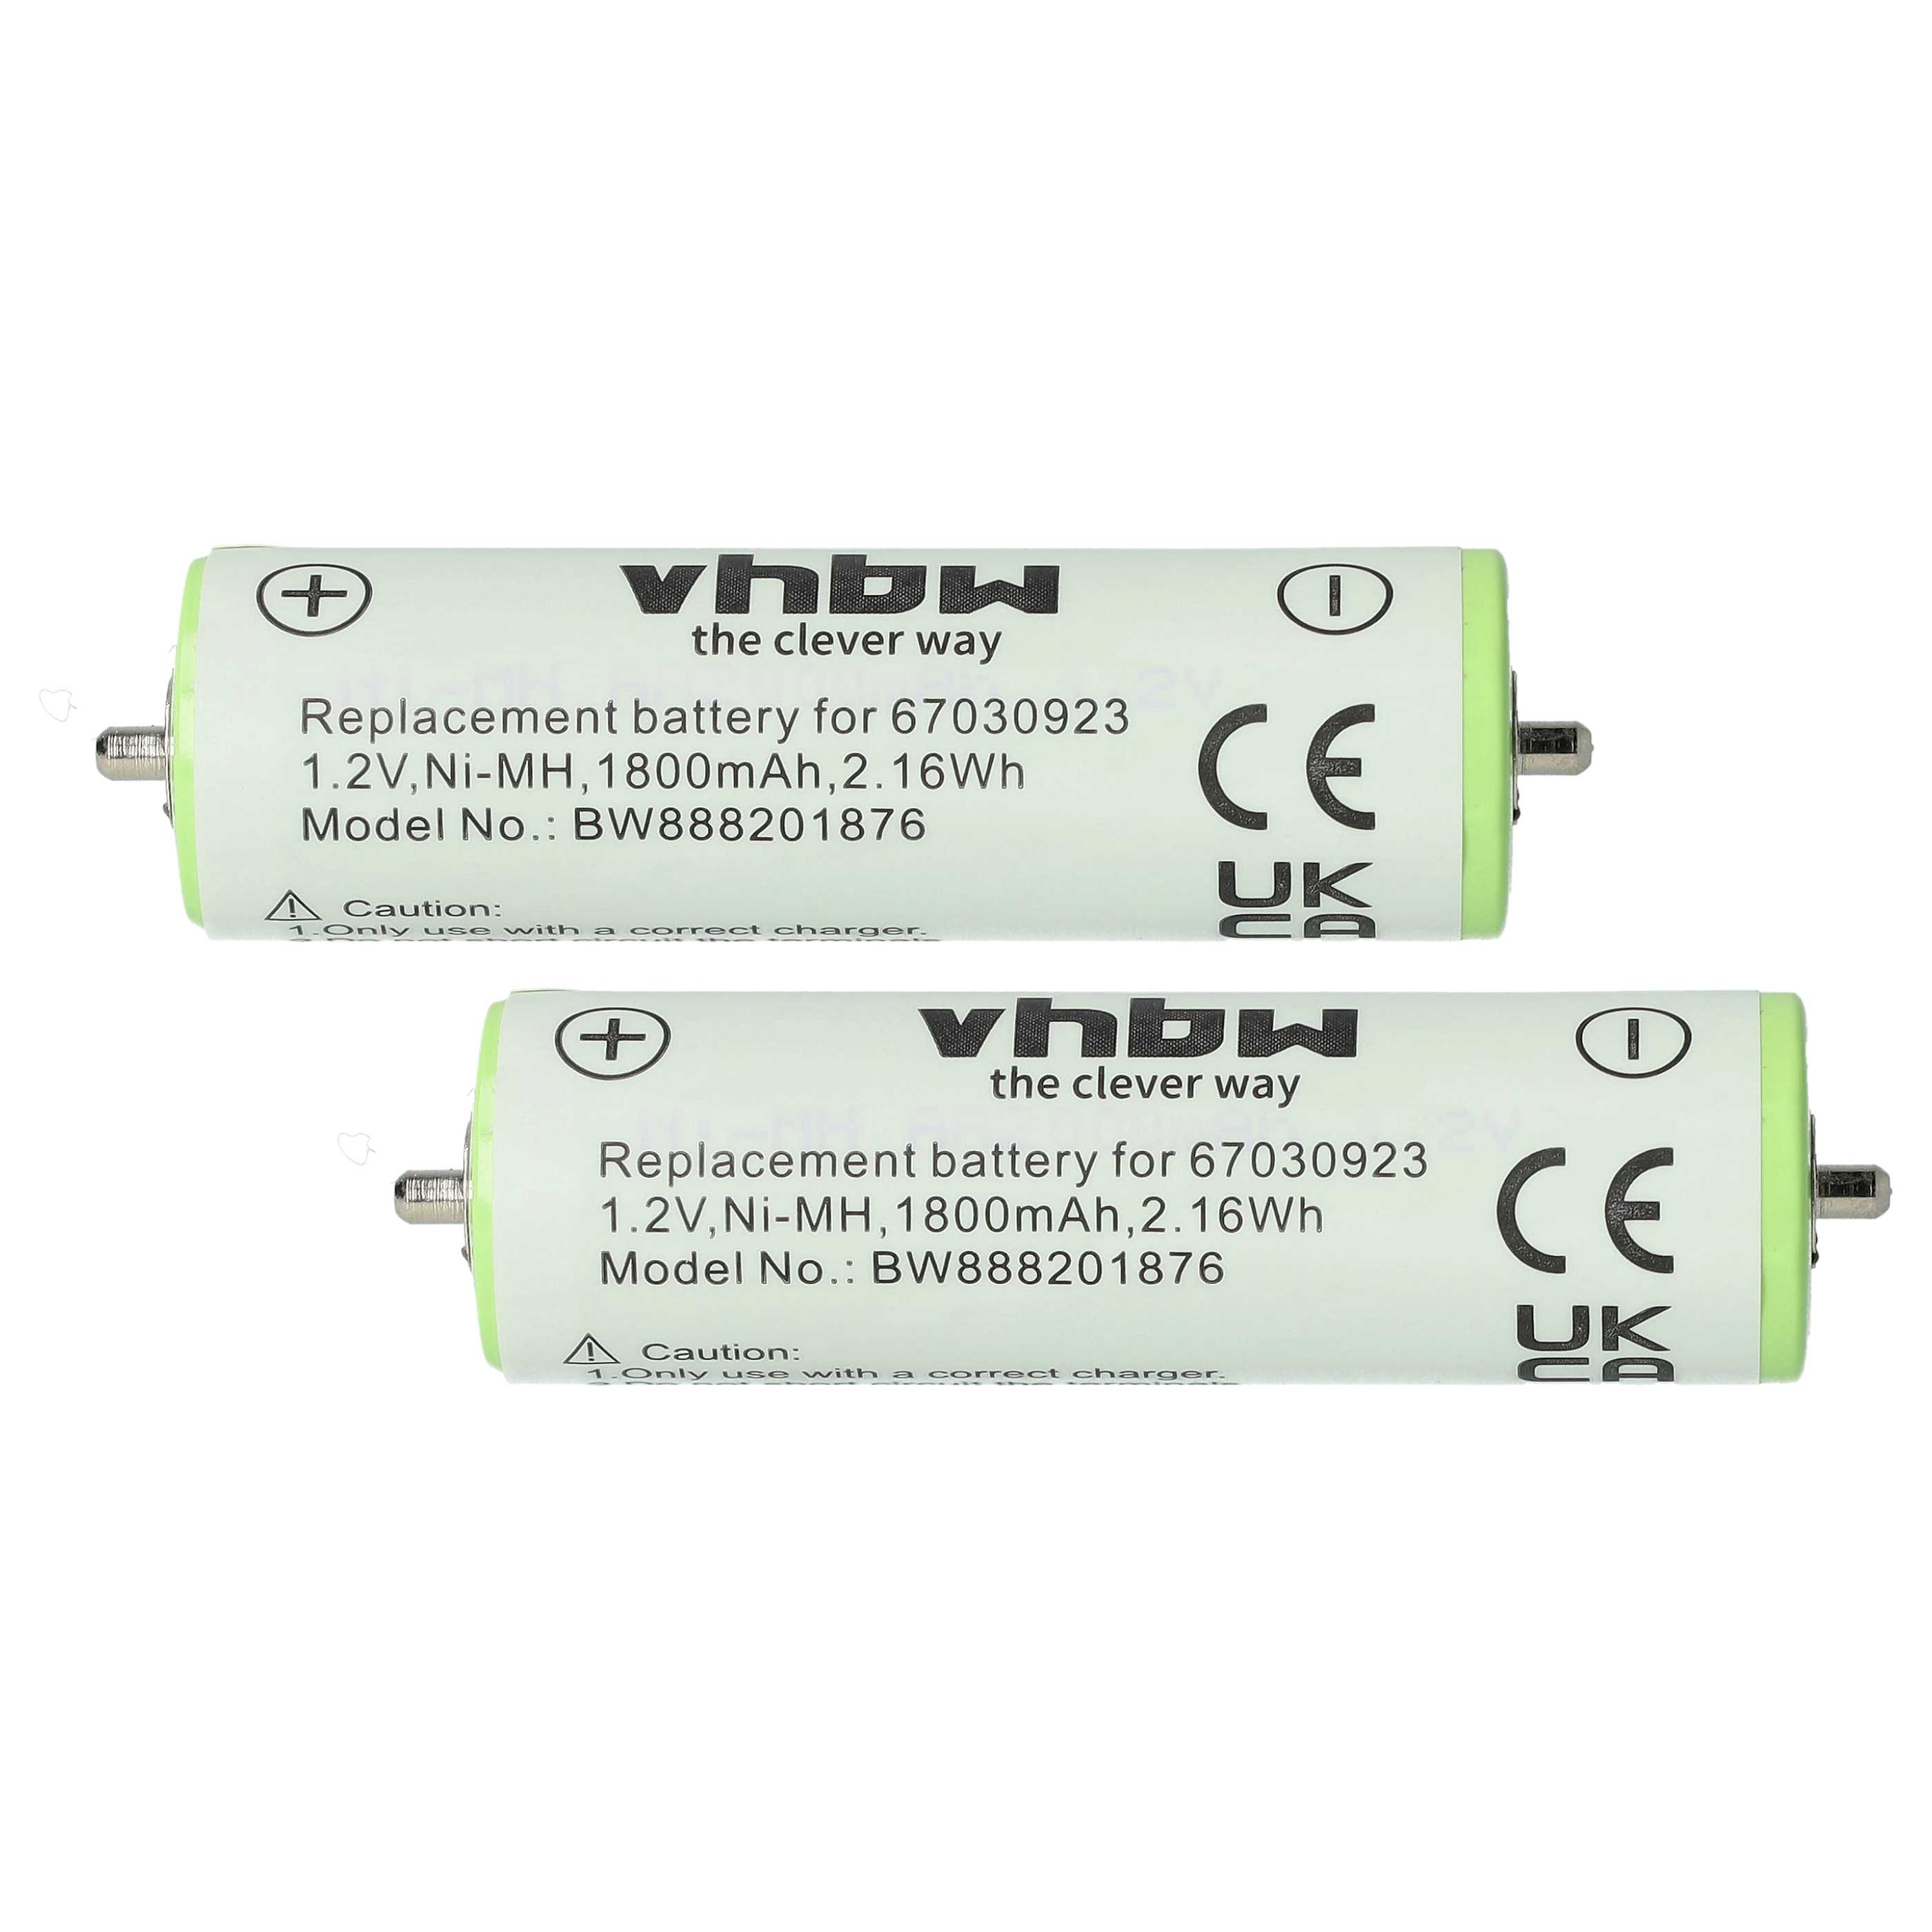 Batteries (2x pièces) remplace Braun 1HR-AAAUV, 67030834, 67030165 pour rasoir électrique - 1800mAh 1,2V NiMH